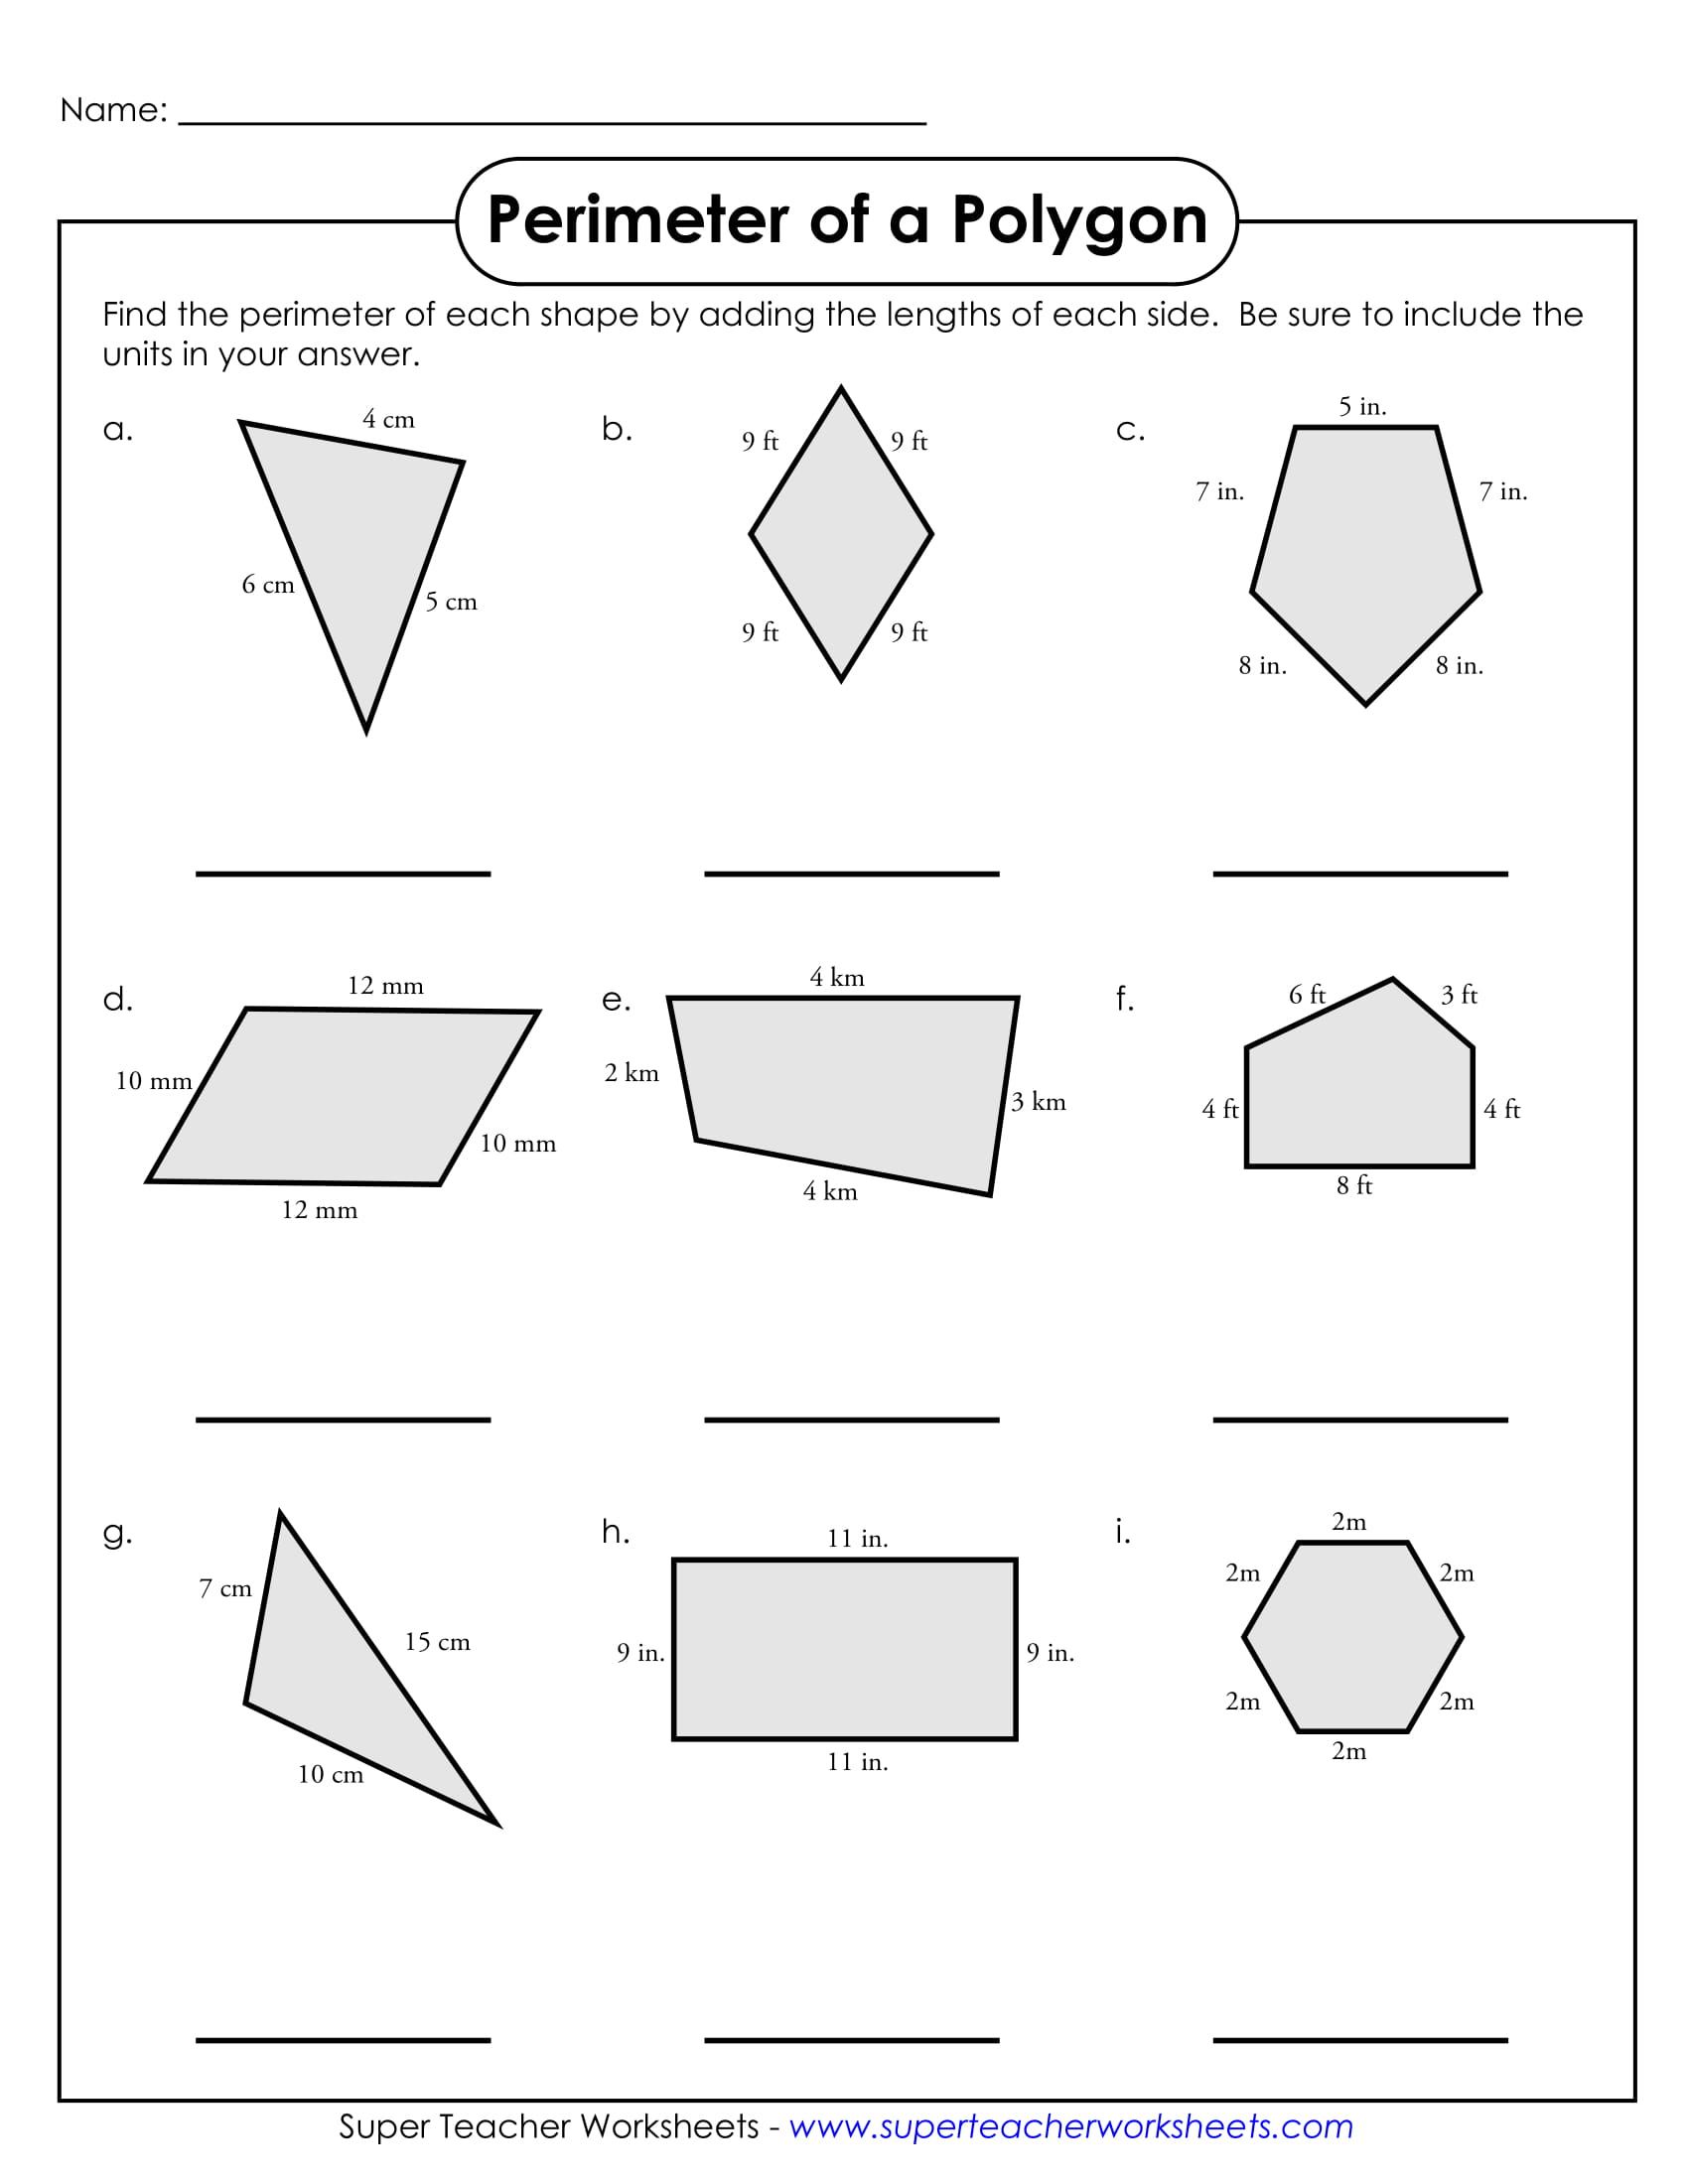 Perimeter of A Polygon Sample Worksheet